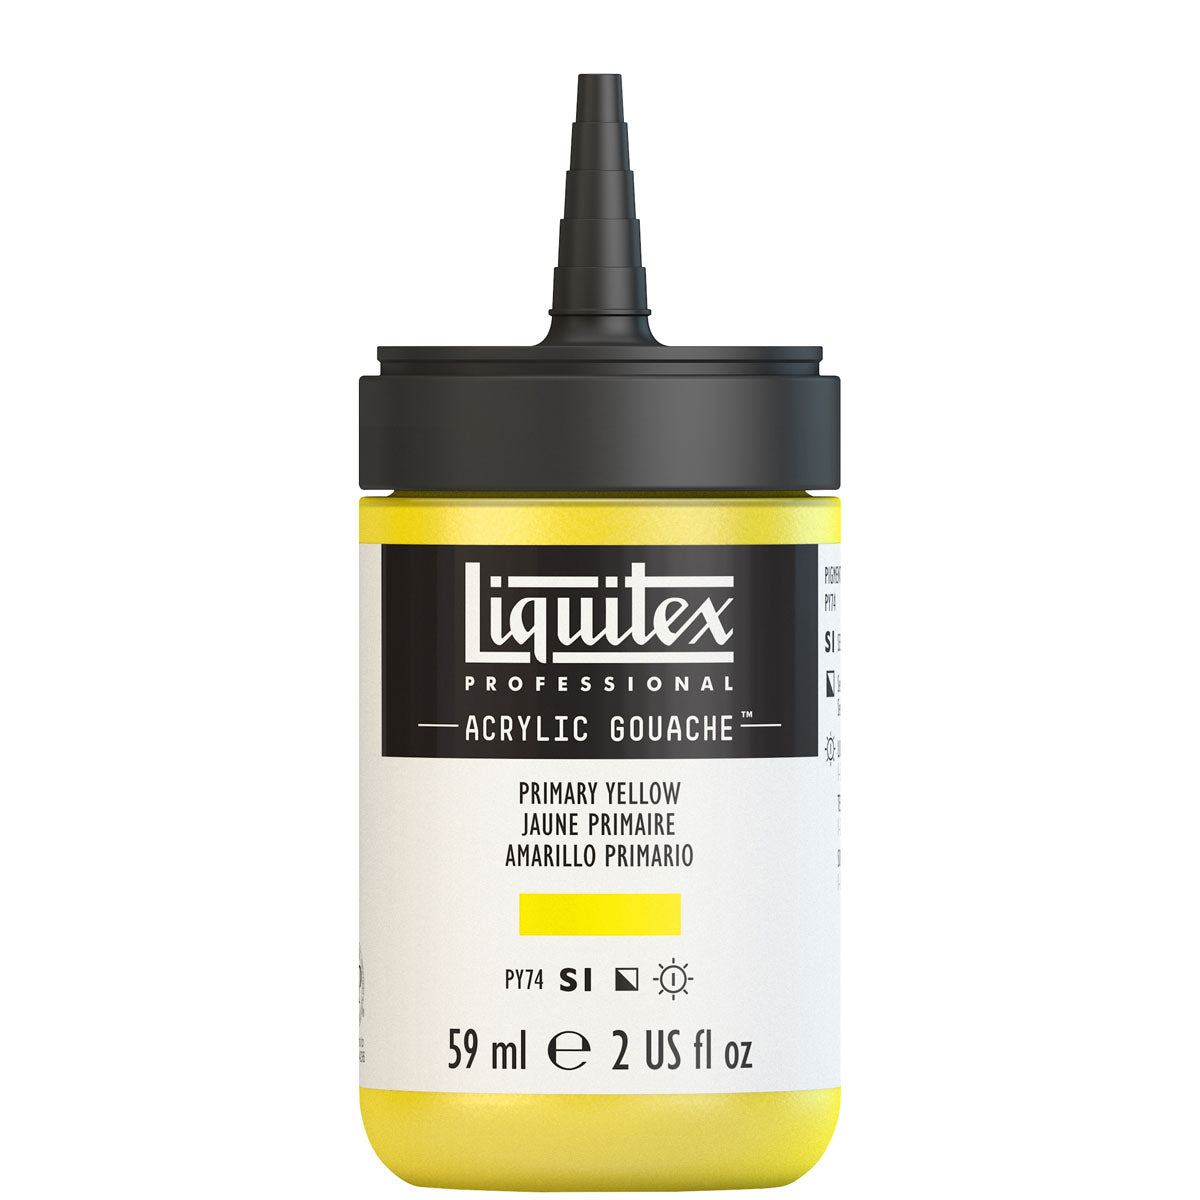 Liquitex - Acrylic Gouache 59ml S1 - Primary Yellow